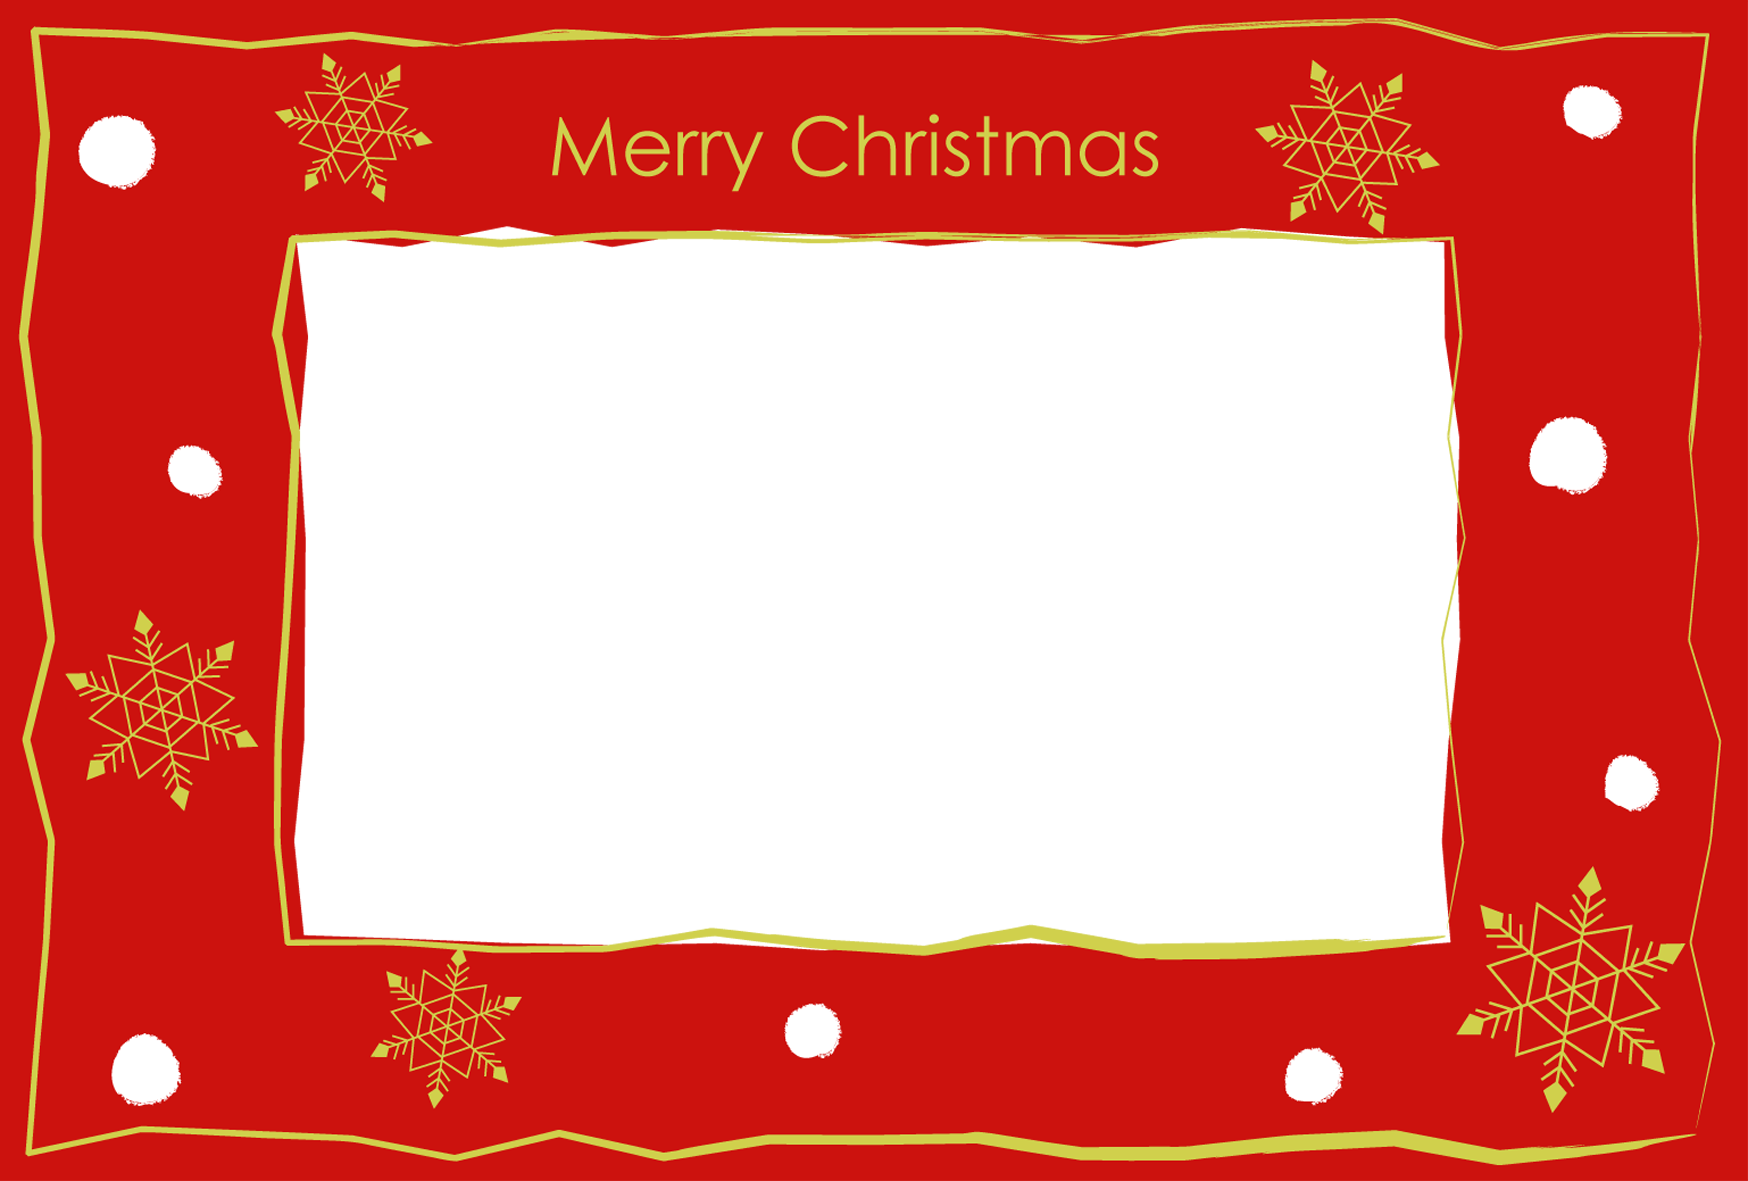 無料クリスマス イラスト素材 素材絵箱クリスマス館 印刷素材クリスマスカードテンプレート写真フレーム 赤いフレーム ダウンロード